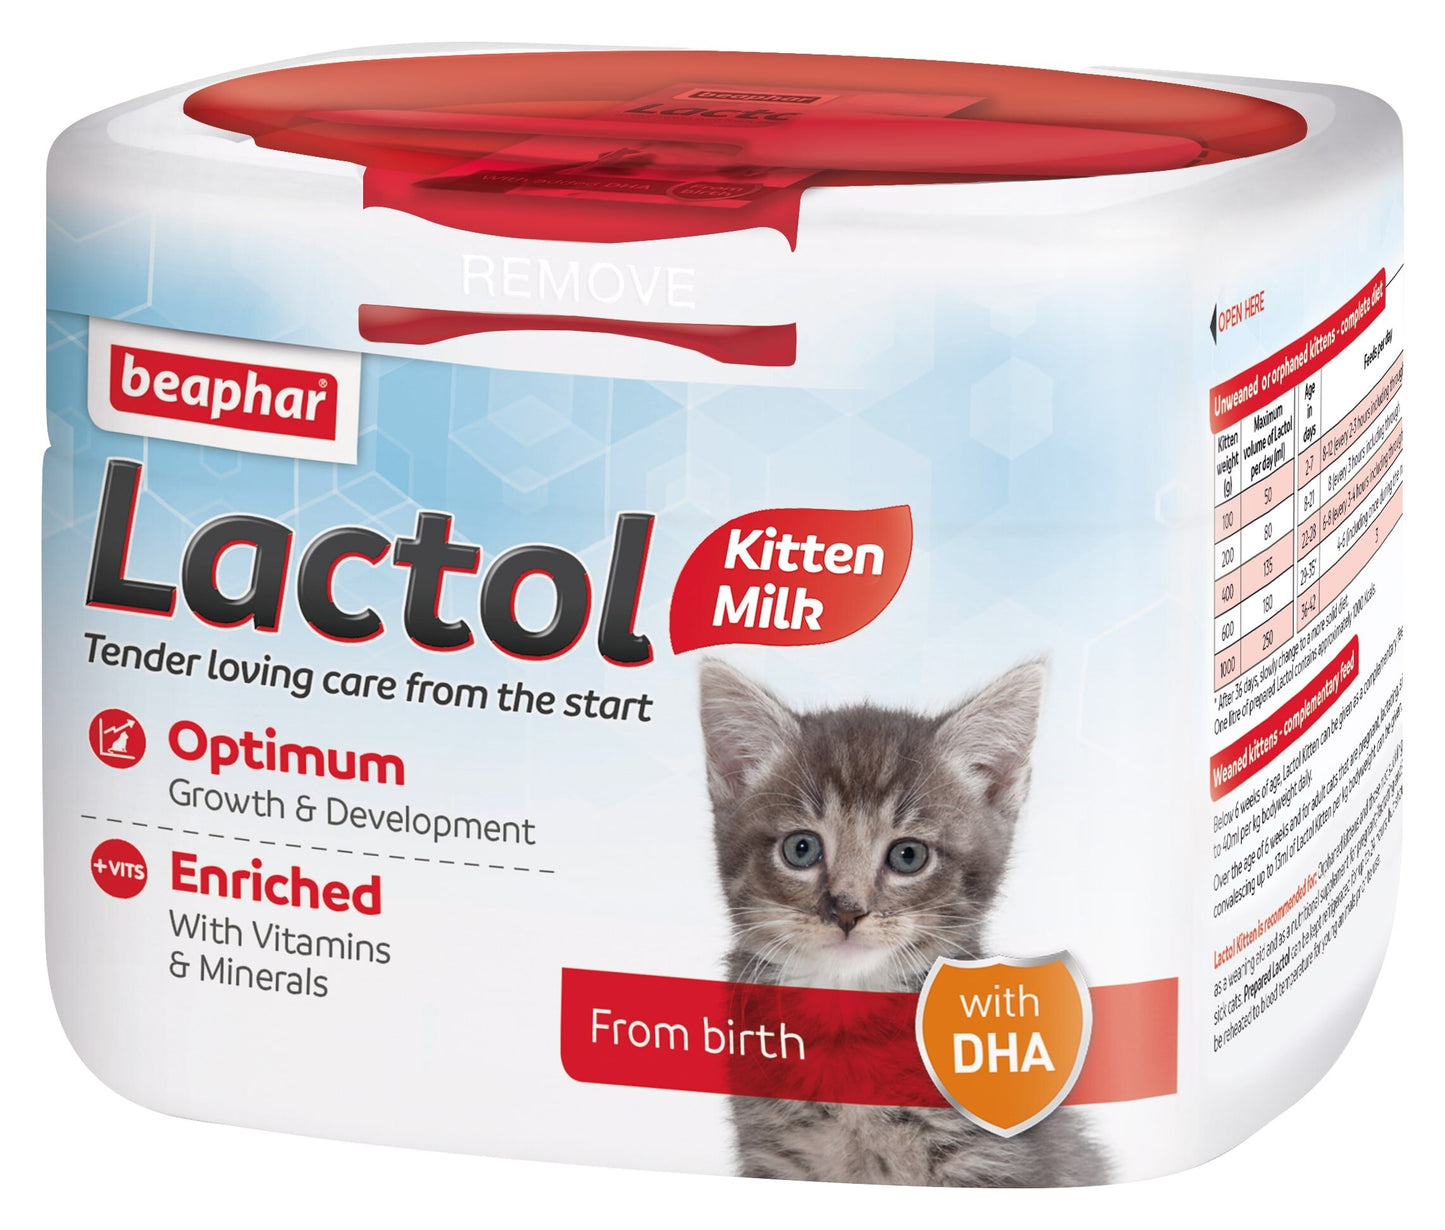 Beaphar Lactol 250g - Kitten Milk